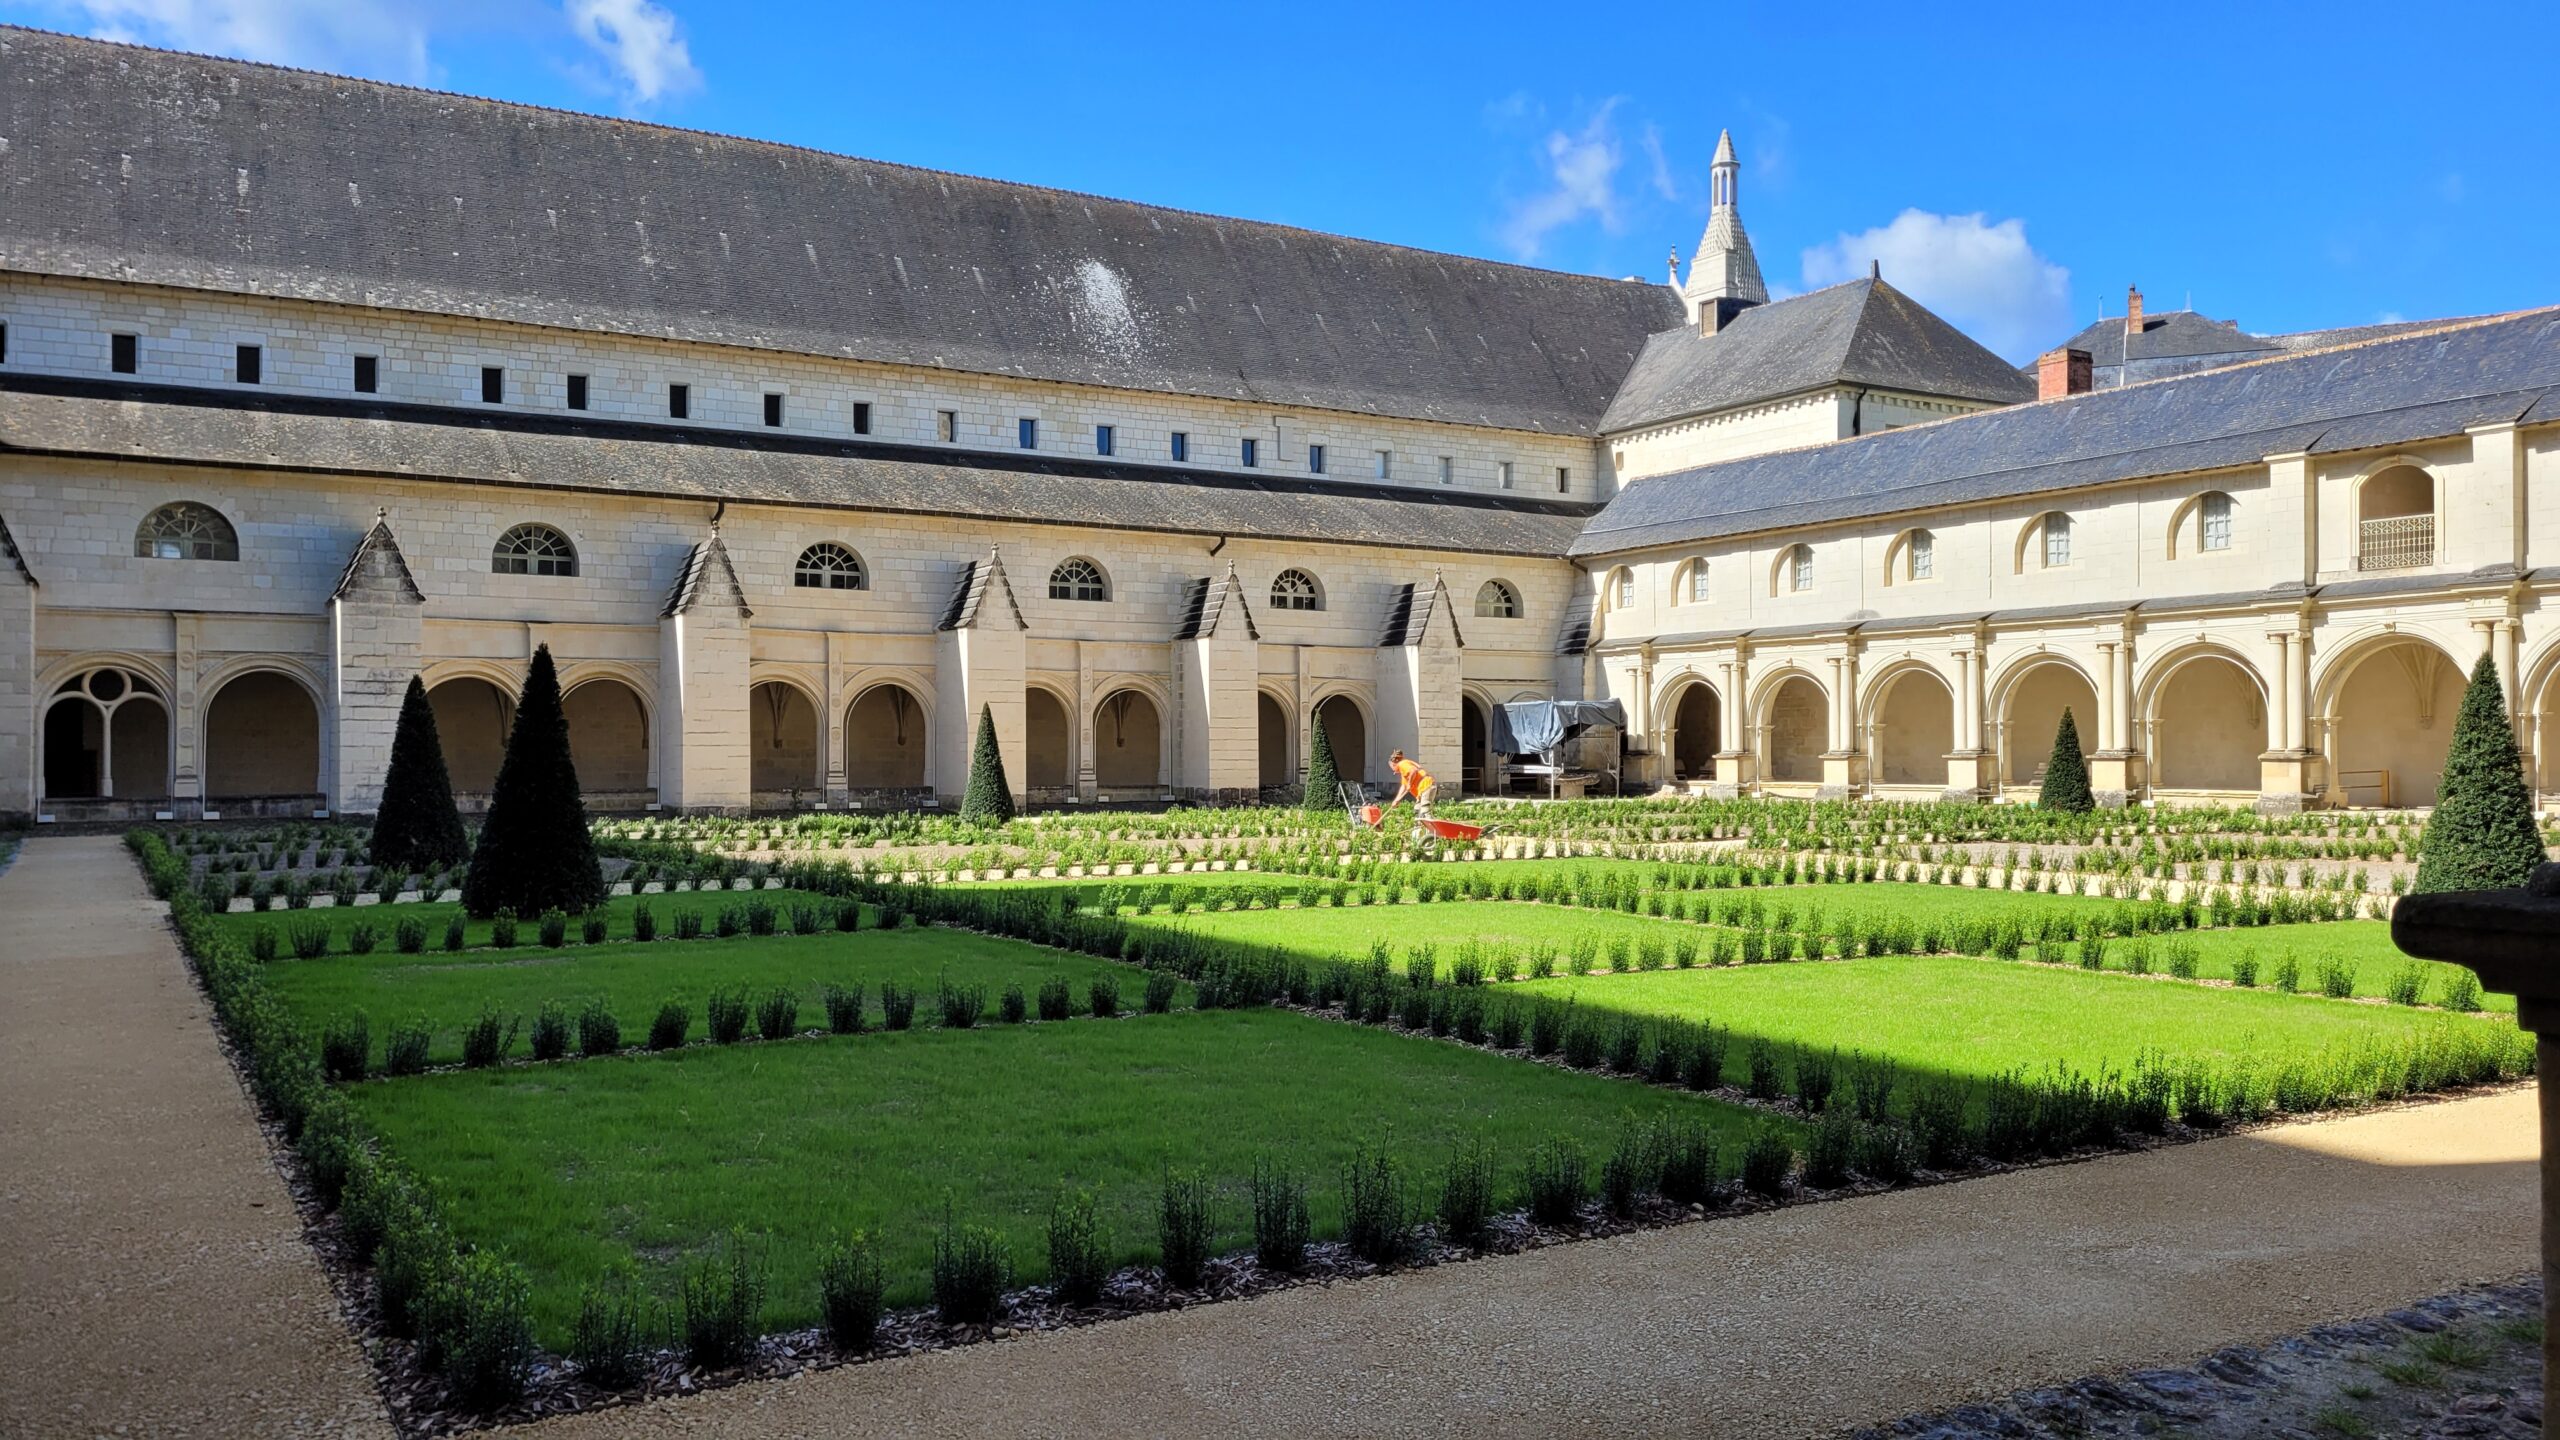 Le cloitre de l'Abbaye Royale de Fontevraud